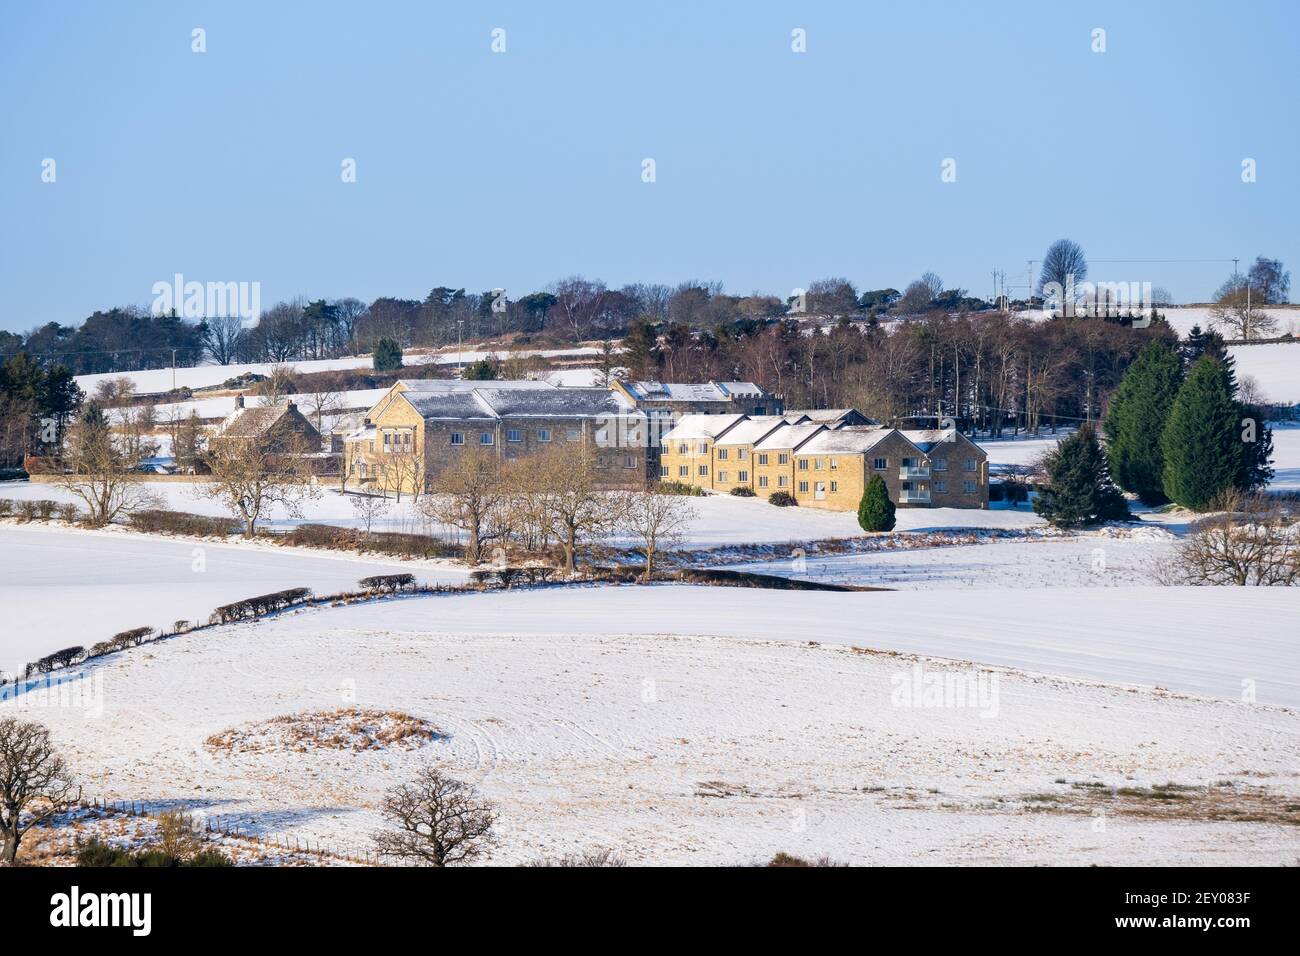 Vue d'hiver sur le Derwent Manor Hotel dans la campagne enneigée. Cet hôtel se trouve juste à côté de l'A68, près de la frontière entre le comté de Durham et Northumberland Banque D'Images